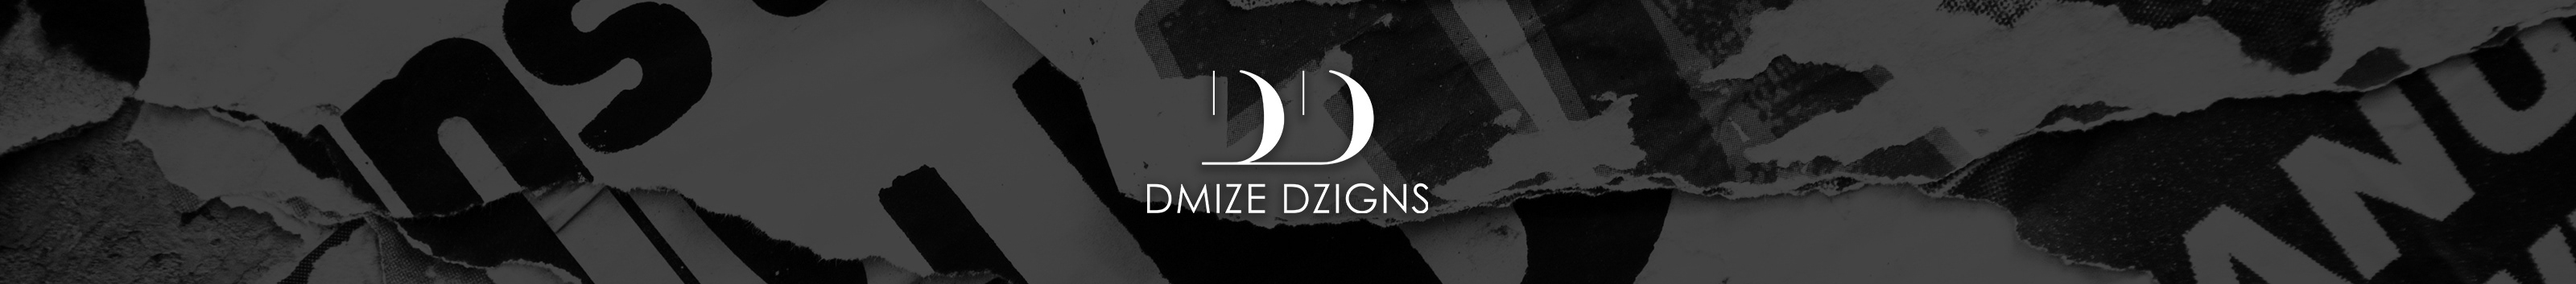 DEVIN MIZE's profile banner